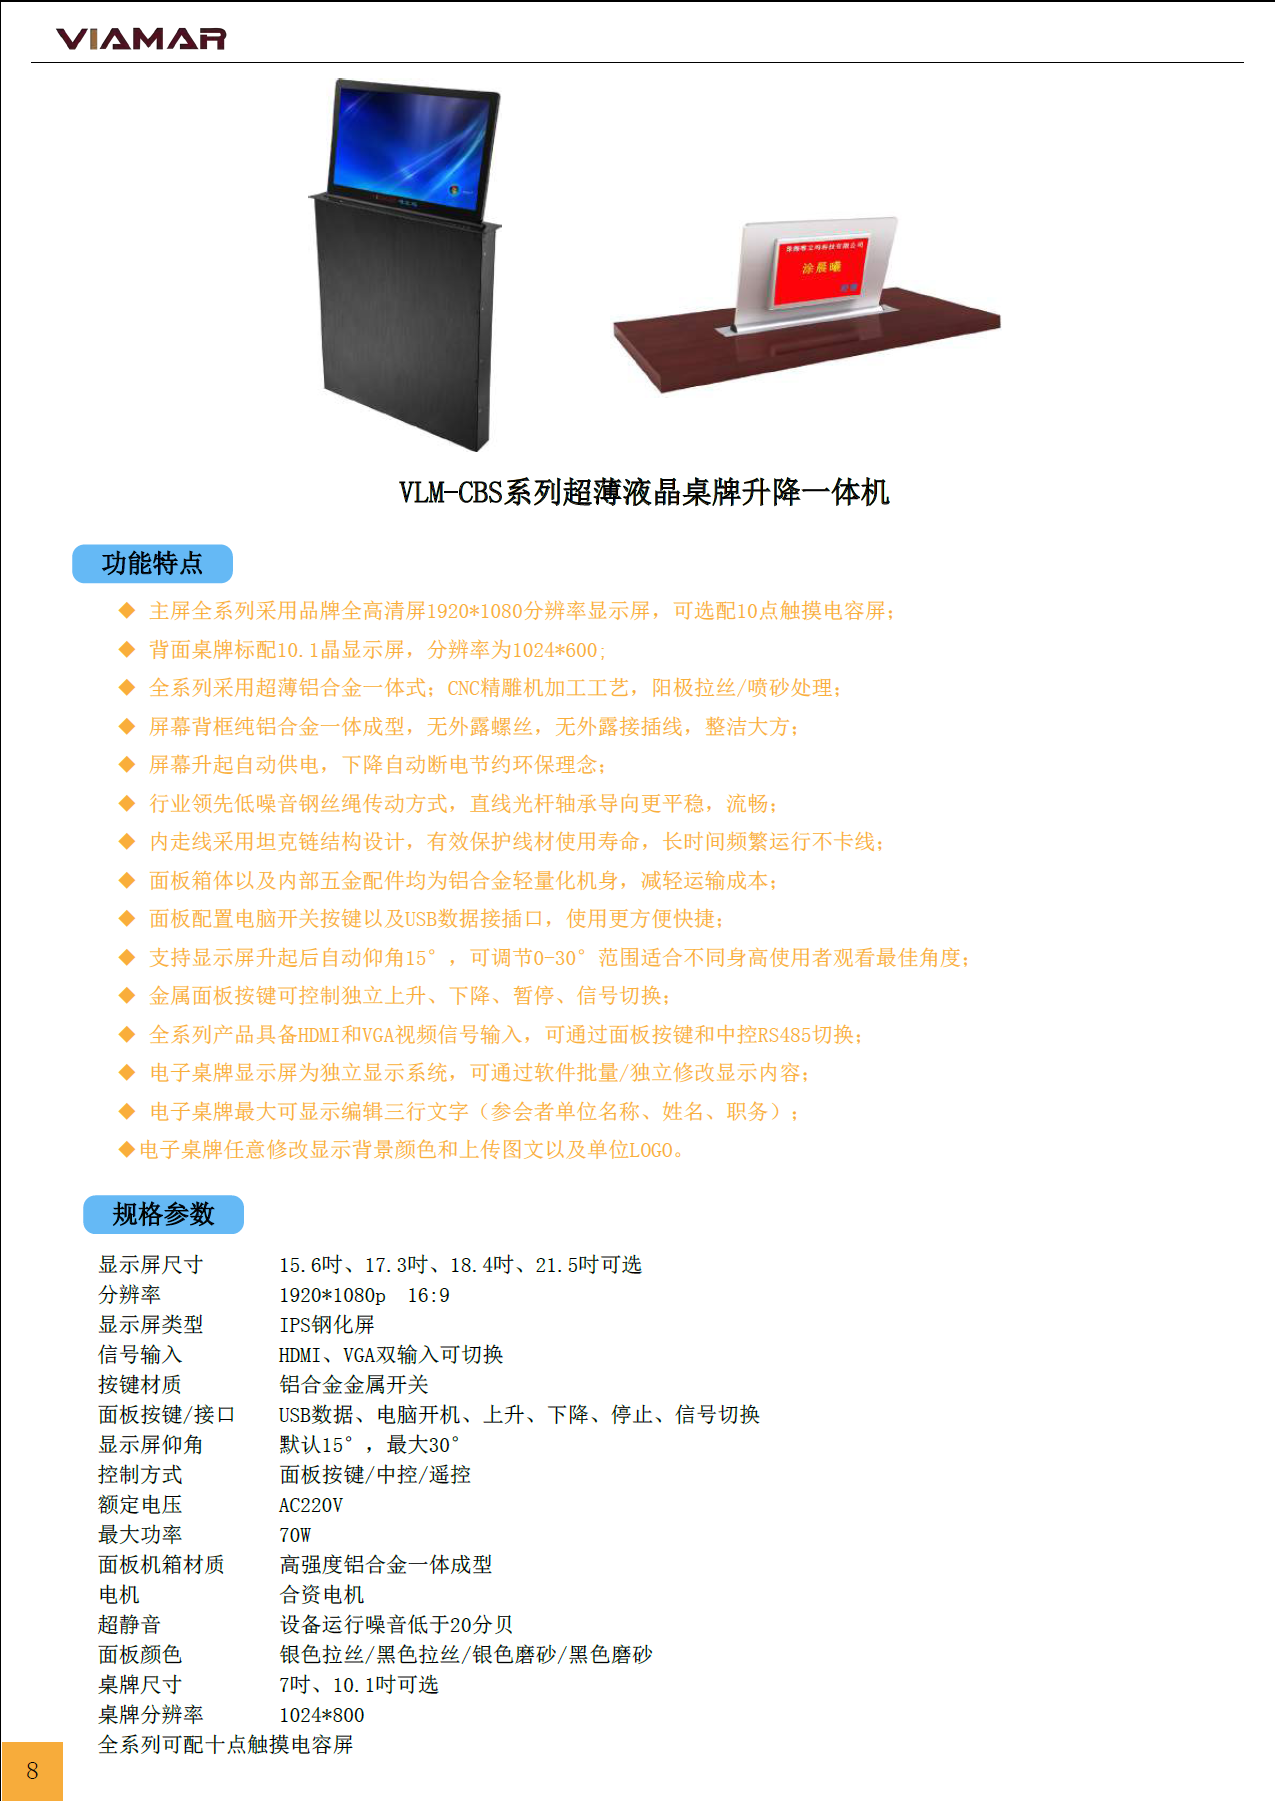 产品名称2.15吋+10.1吋超薄液晶桌牌升降一体机（双屏触摸版）产品详情VLM-CBS215-CM产品参数图